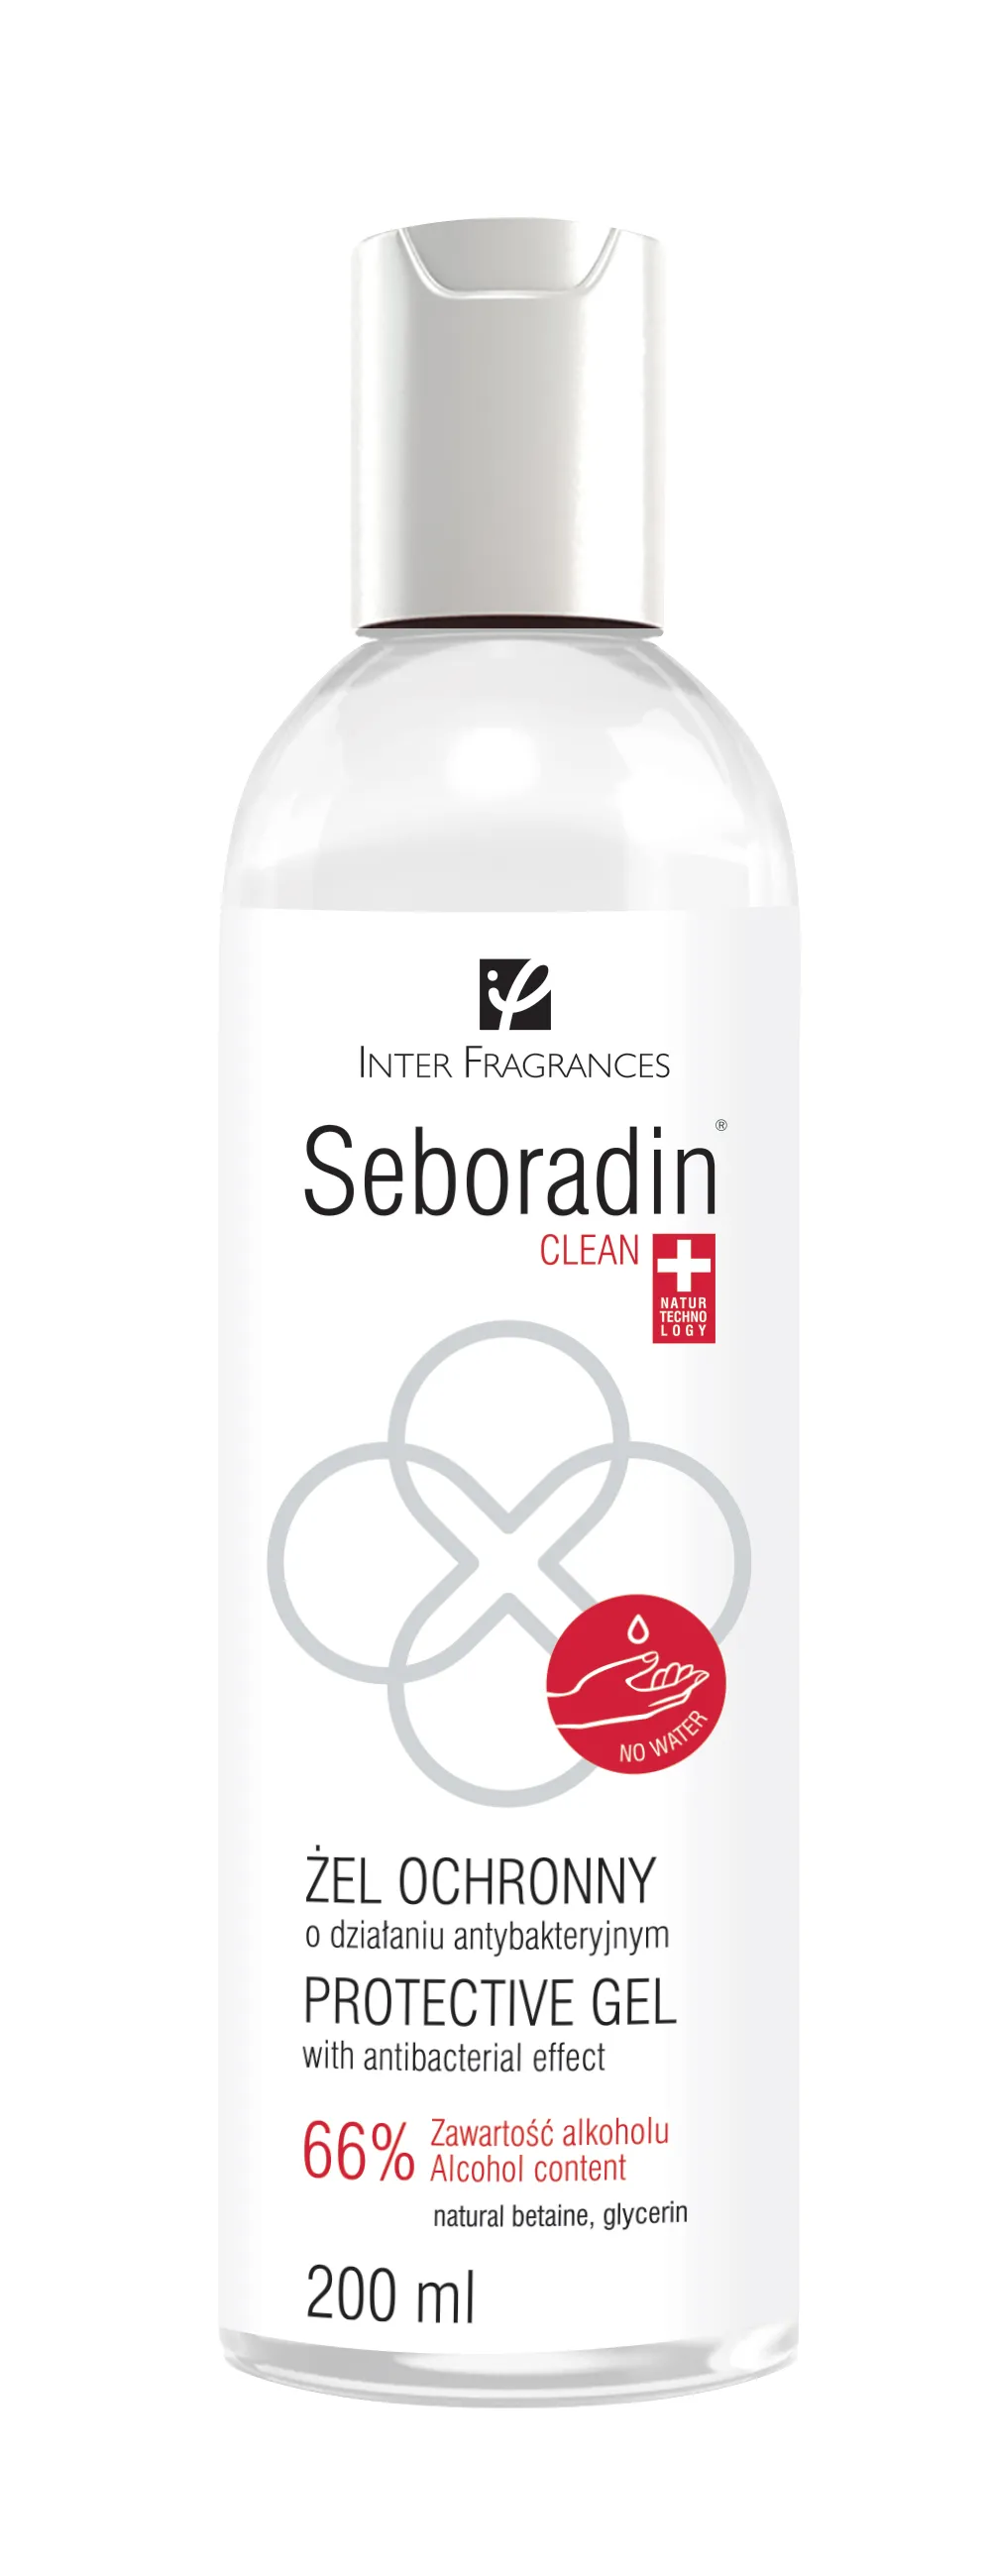 Seboradin Clean, żel ochronny o działaniu antybakteryjnym, 200 ml